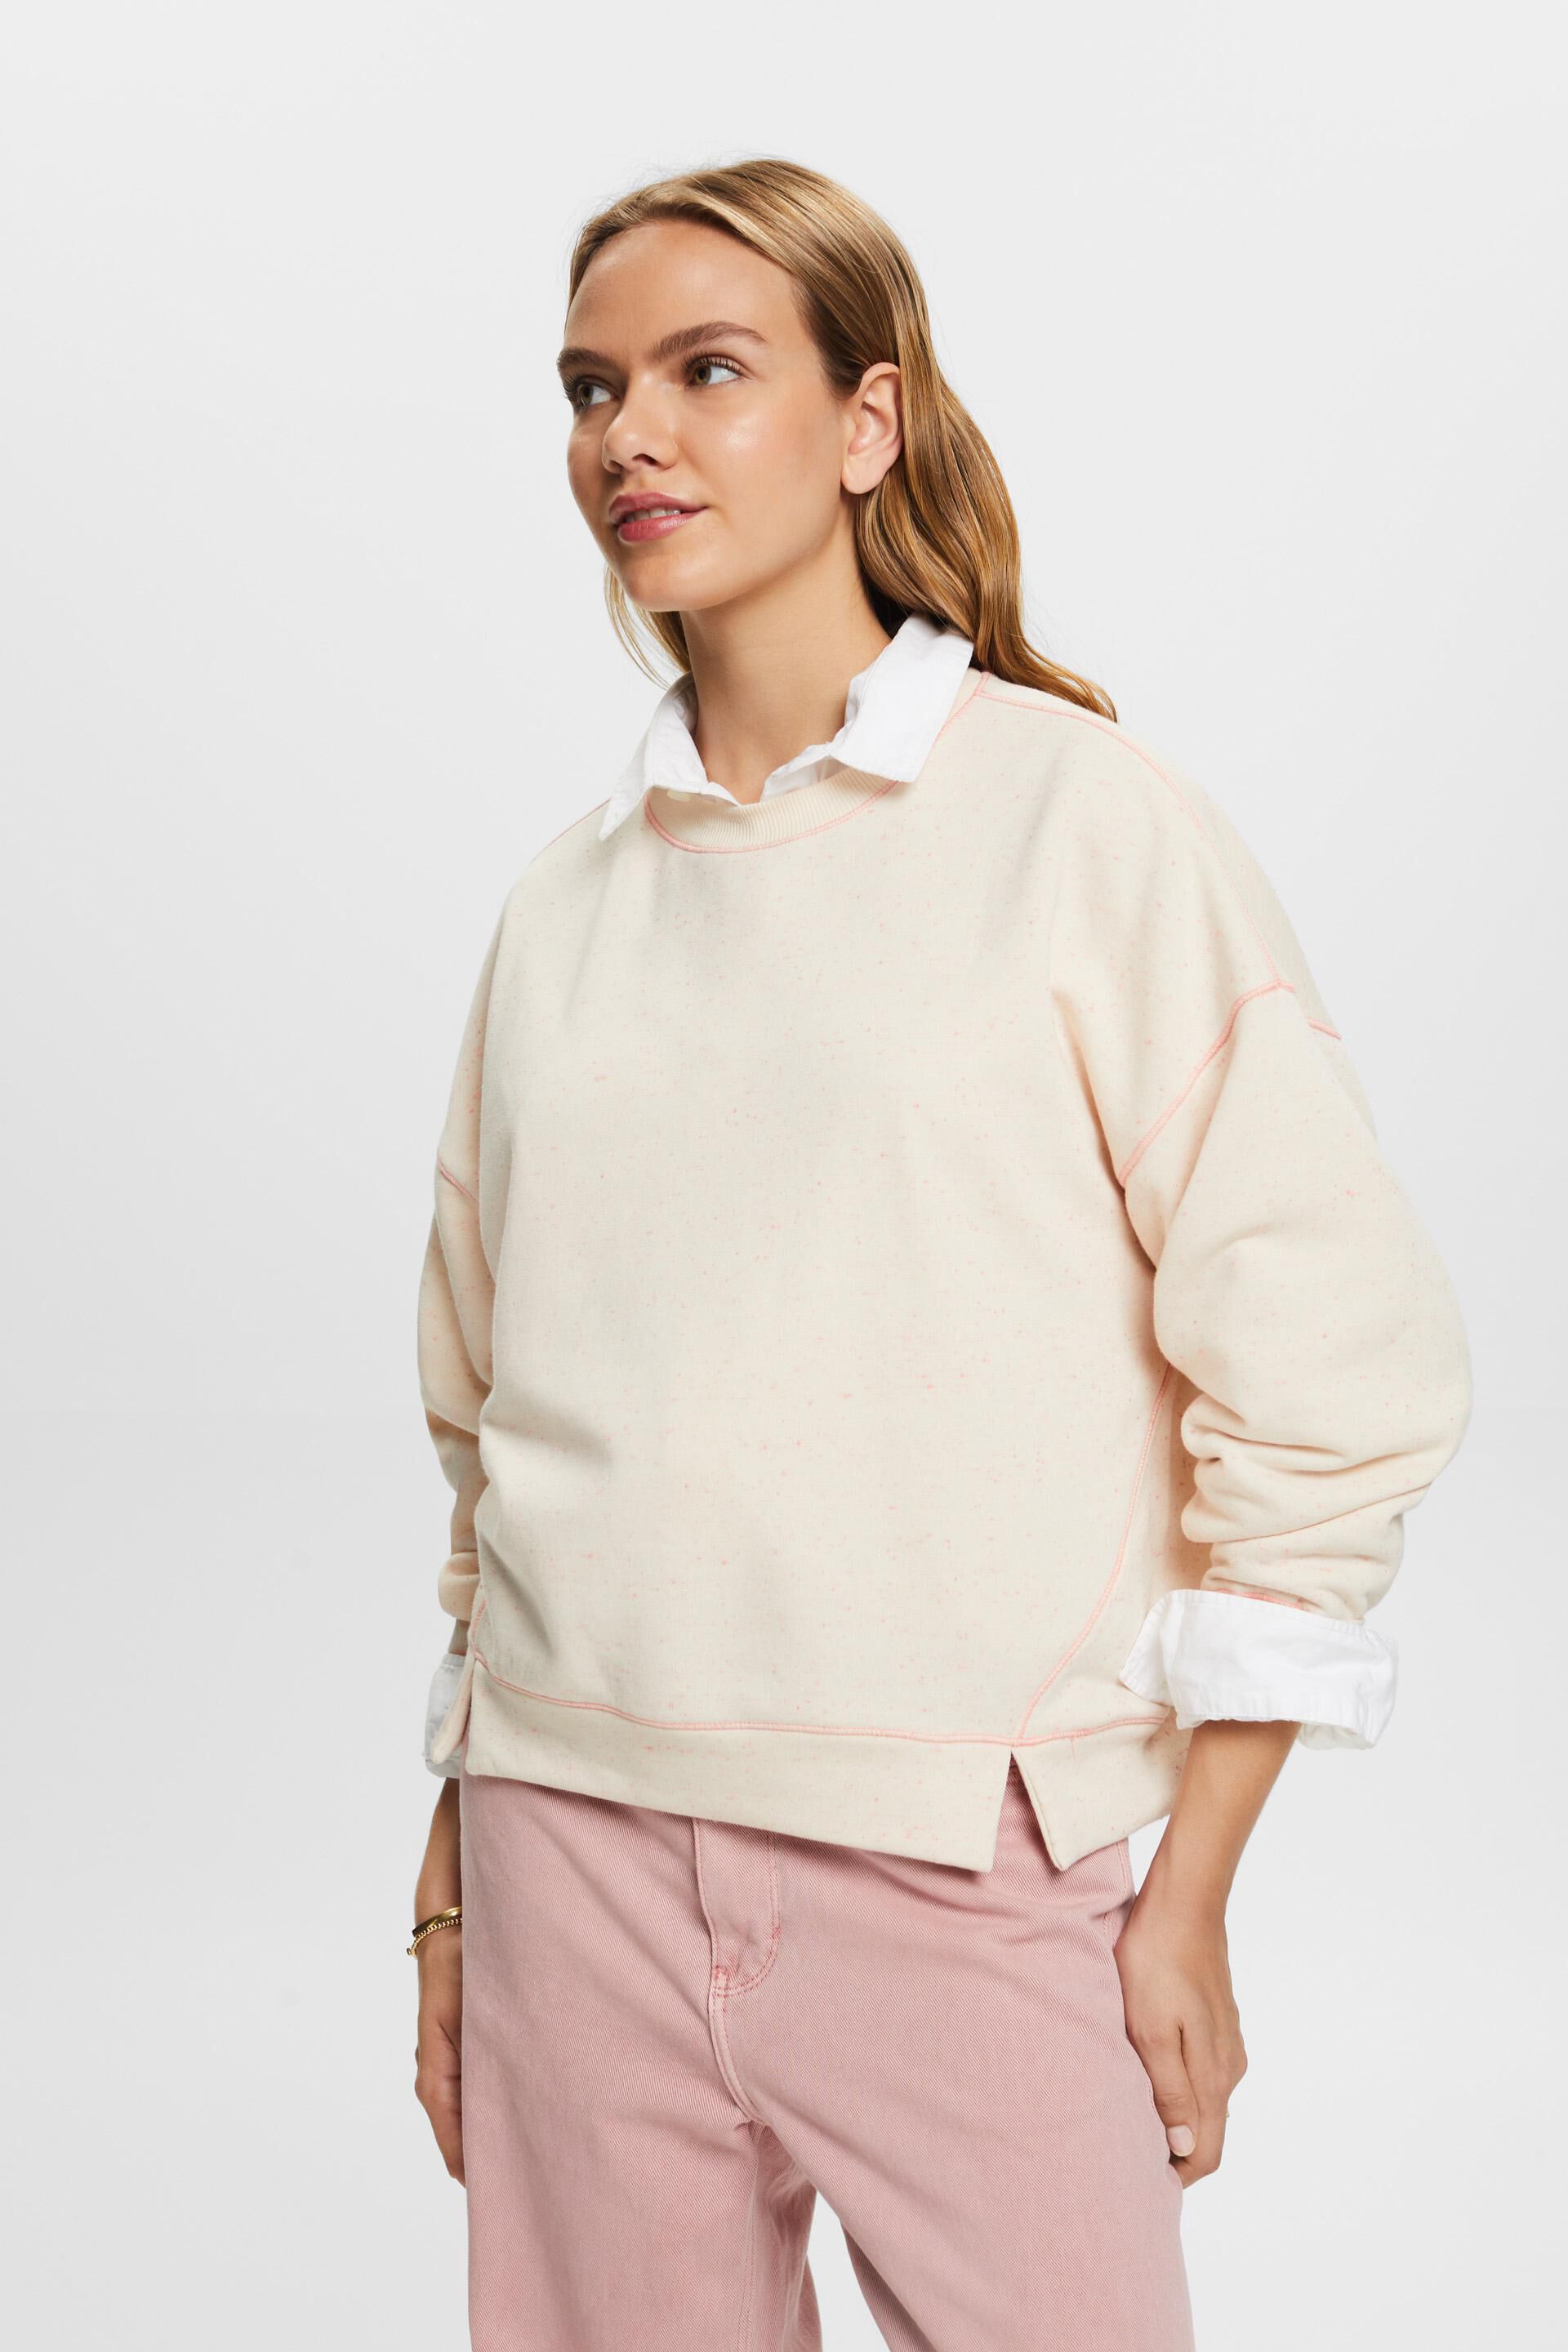 Esprit cotton blend sweatshirt, Sprinkled